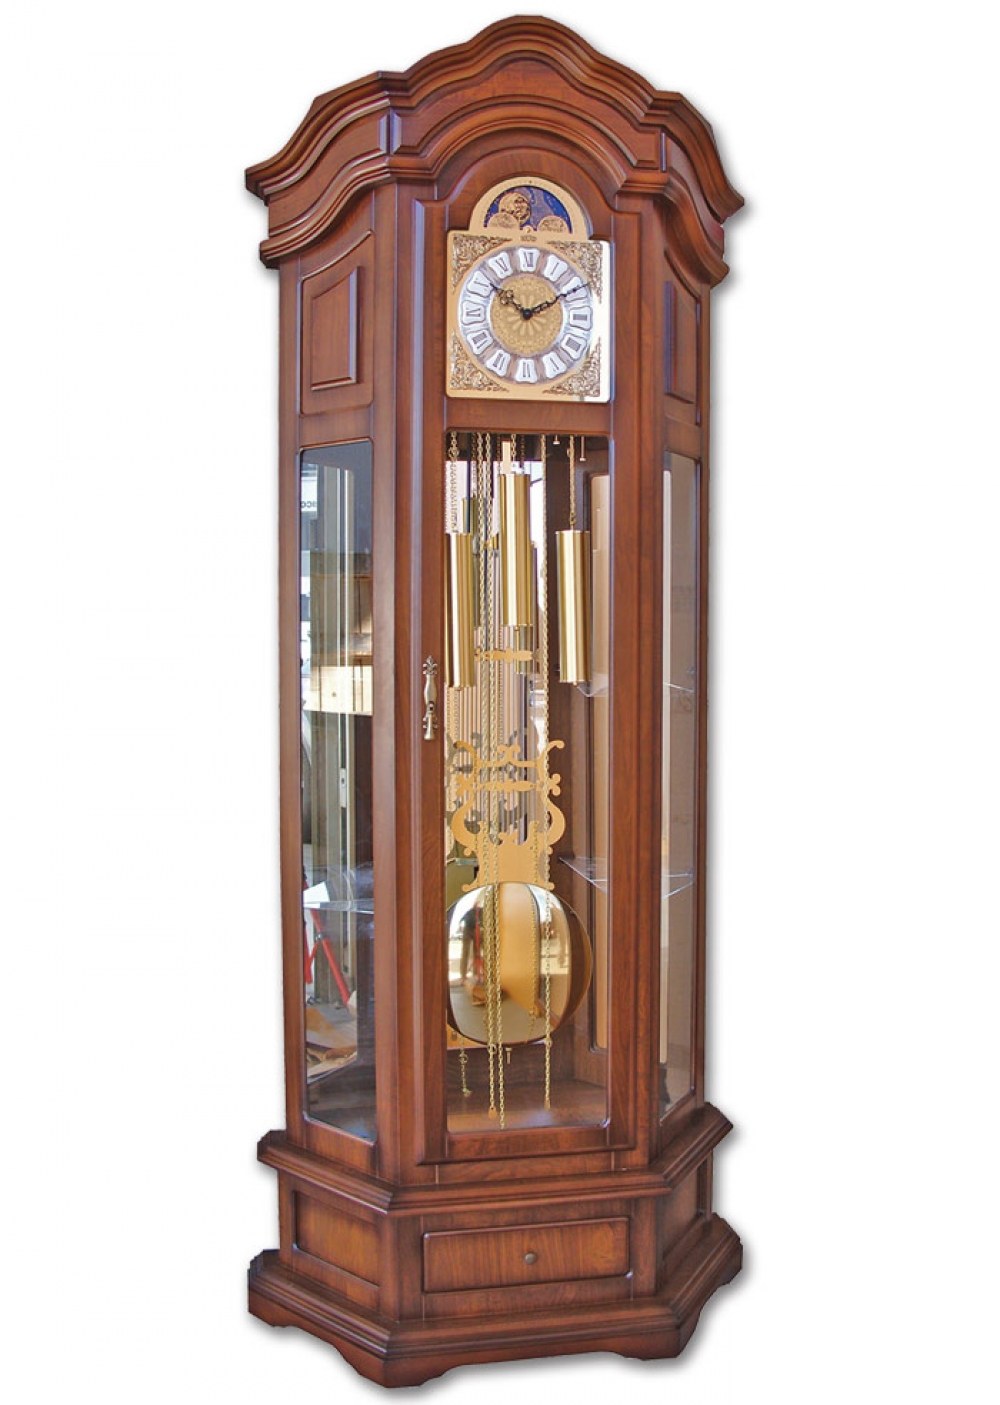 Напольные часы с маятником в деревянном корпусе. Напольные часы SARS 2089-1161 White. Часы Хермле напольные. Hermle часы напольные в интерьере. Hermle 01222-030271.